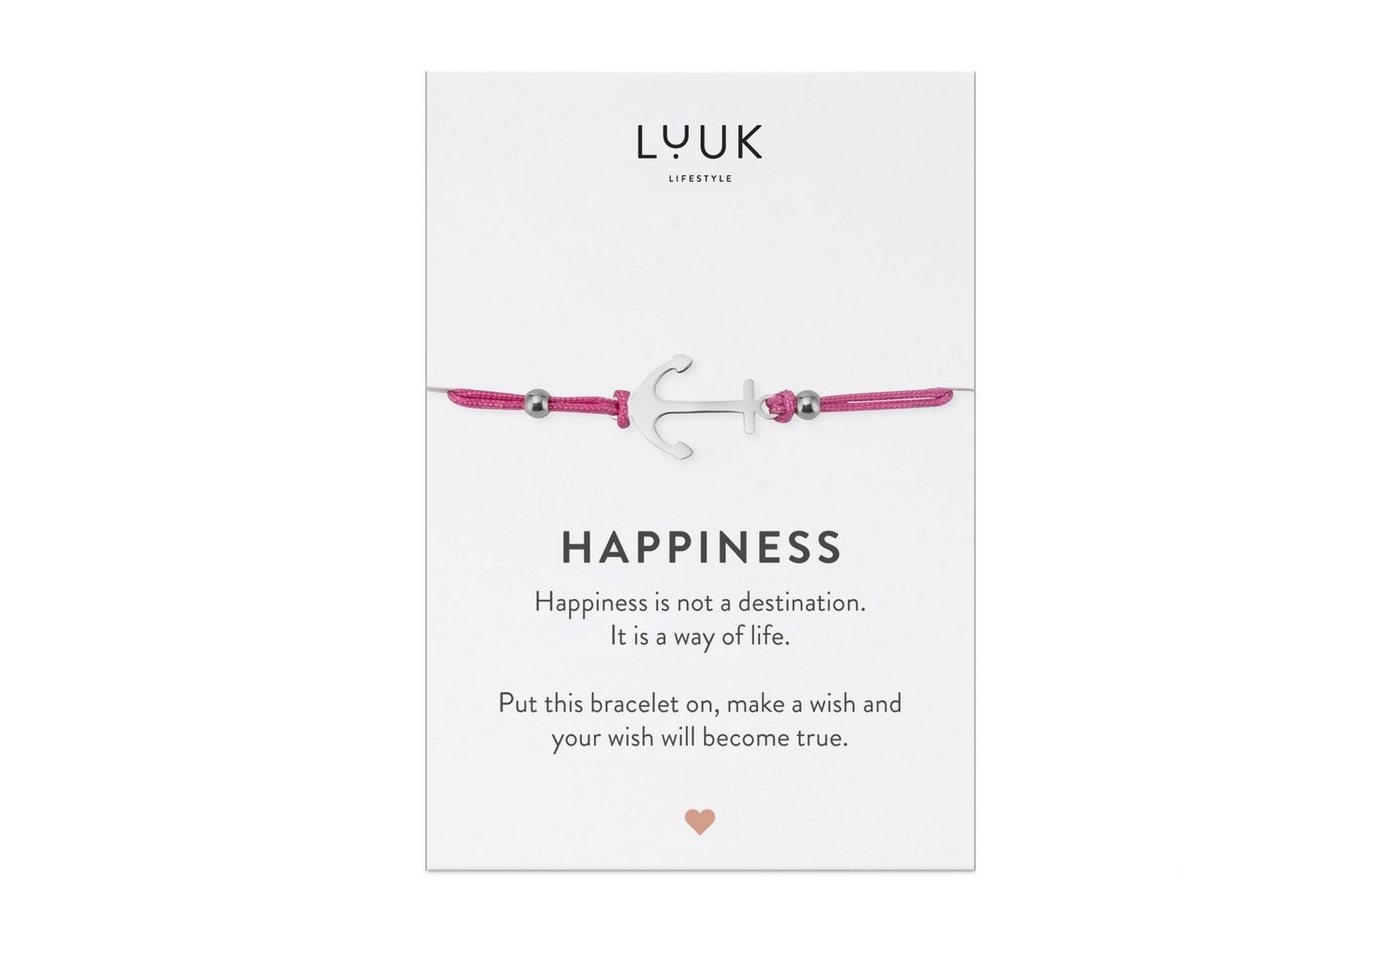 LUUK LIFESTYLE Freundschaftsarmband Anker, handmade, mit Happiness Spruchkarte von LUUK LIFESTYLE